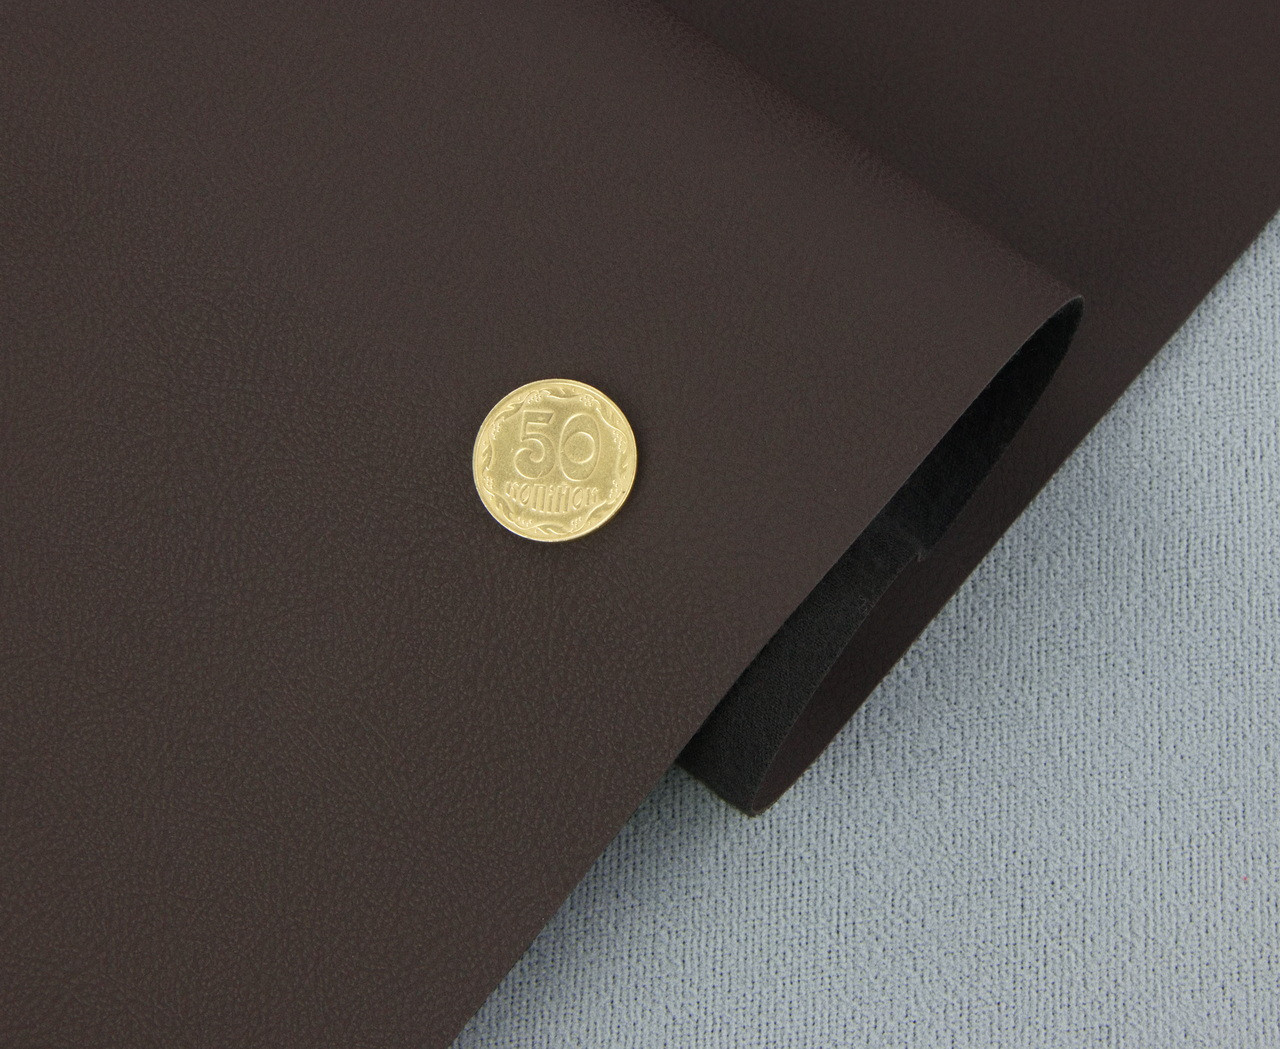 Биеластик тягучий темно-коричневый матовый Elista-04 для перетяжки дверных карт, стоек, airbag и вставок, ширина 145 см детальная фотка